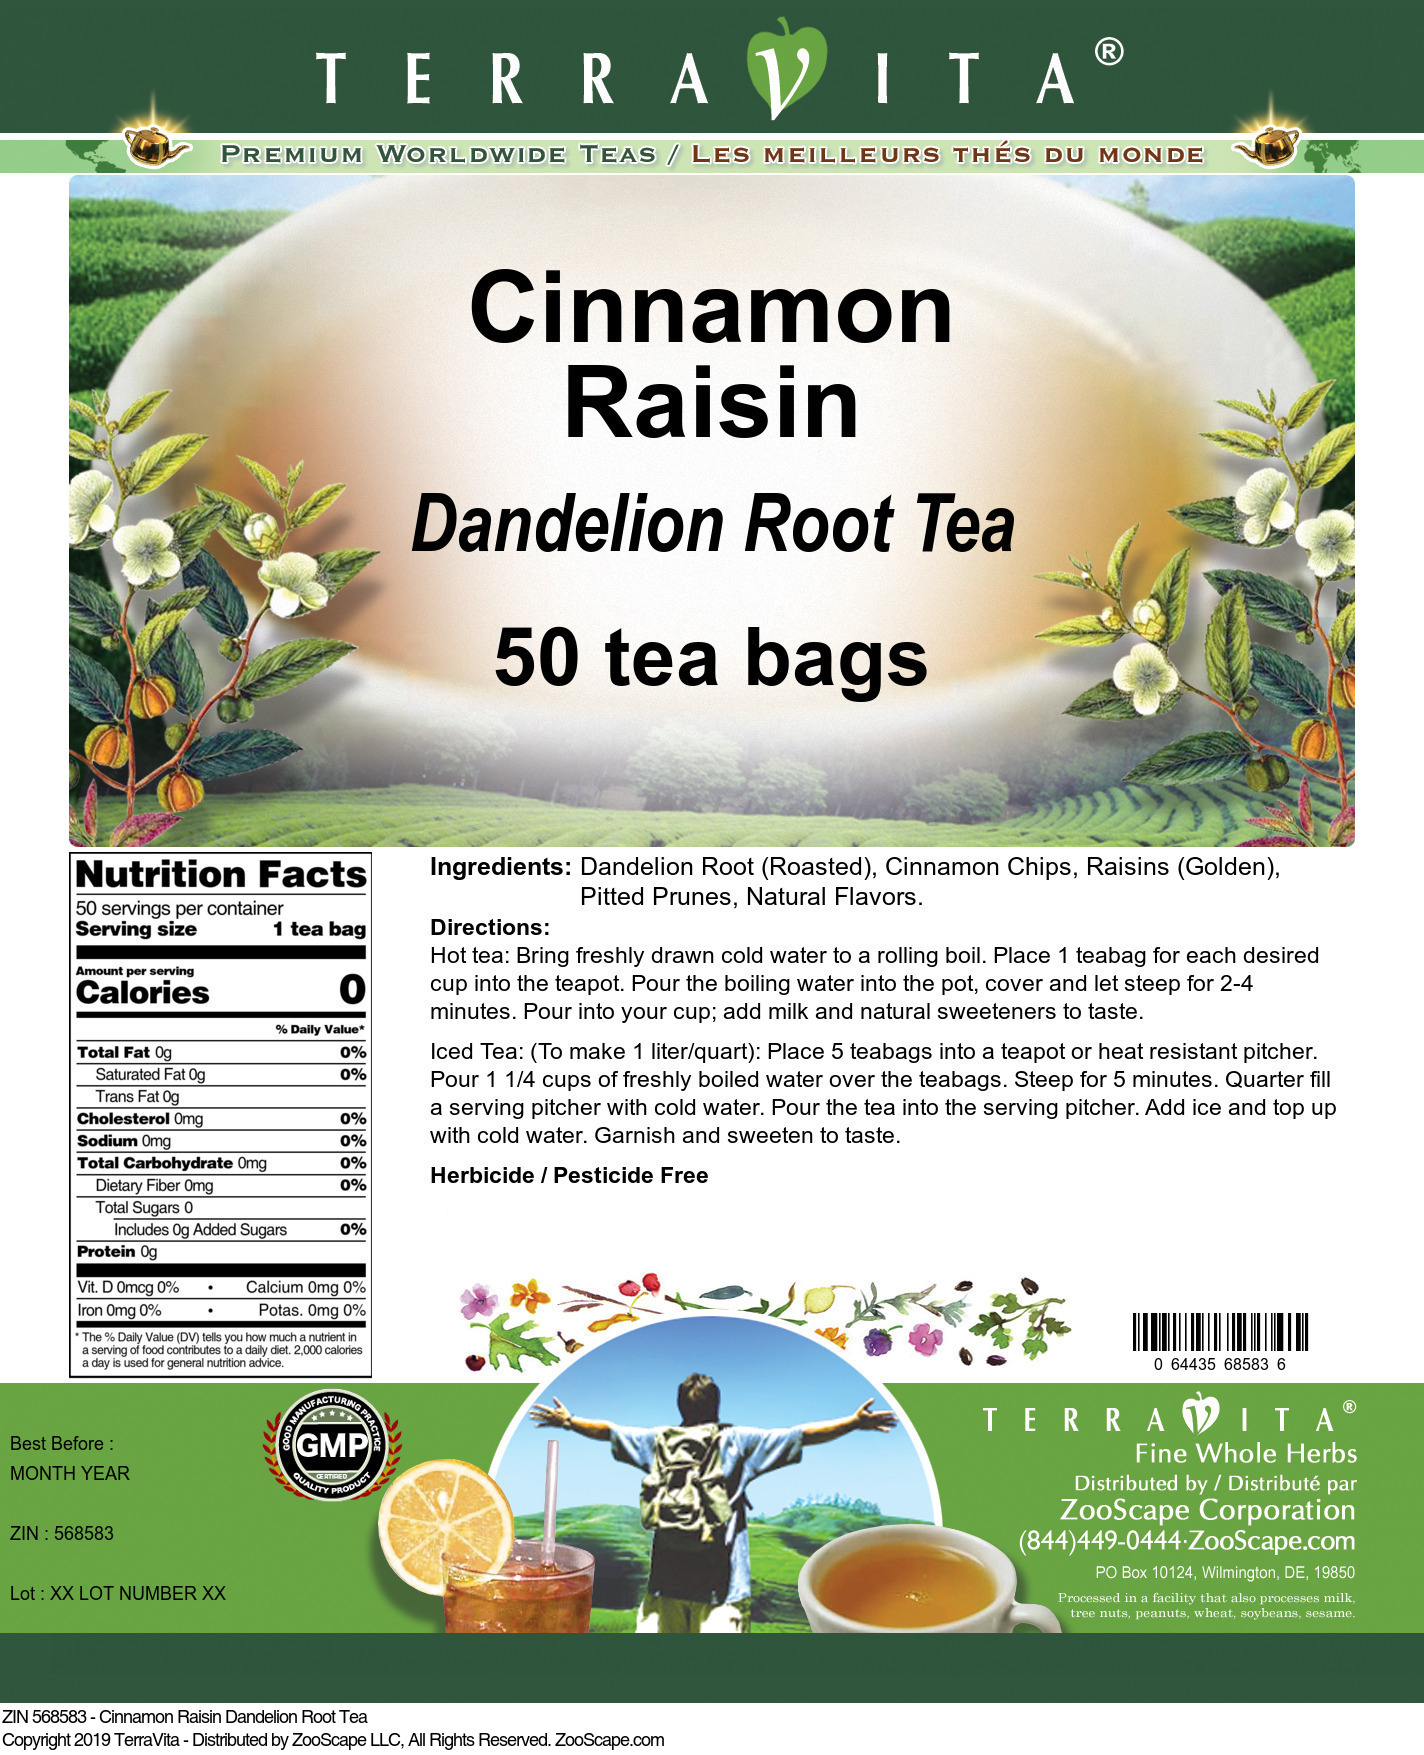 Cinnamon Raisin Dandelion Root Tea - Label